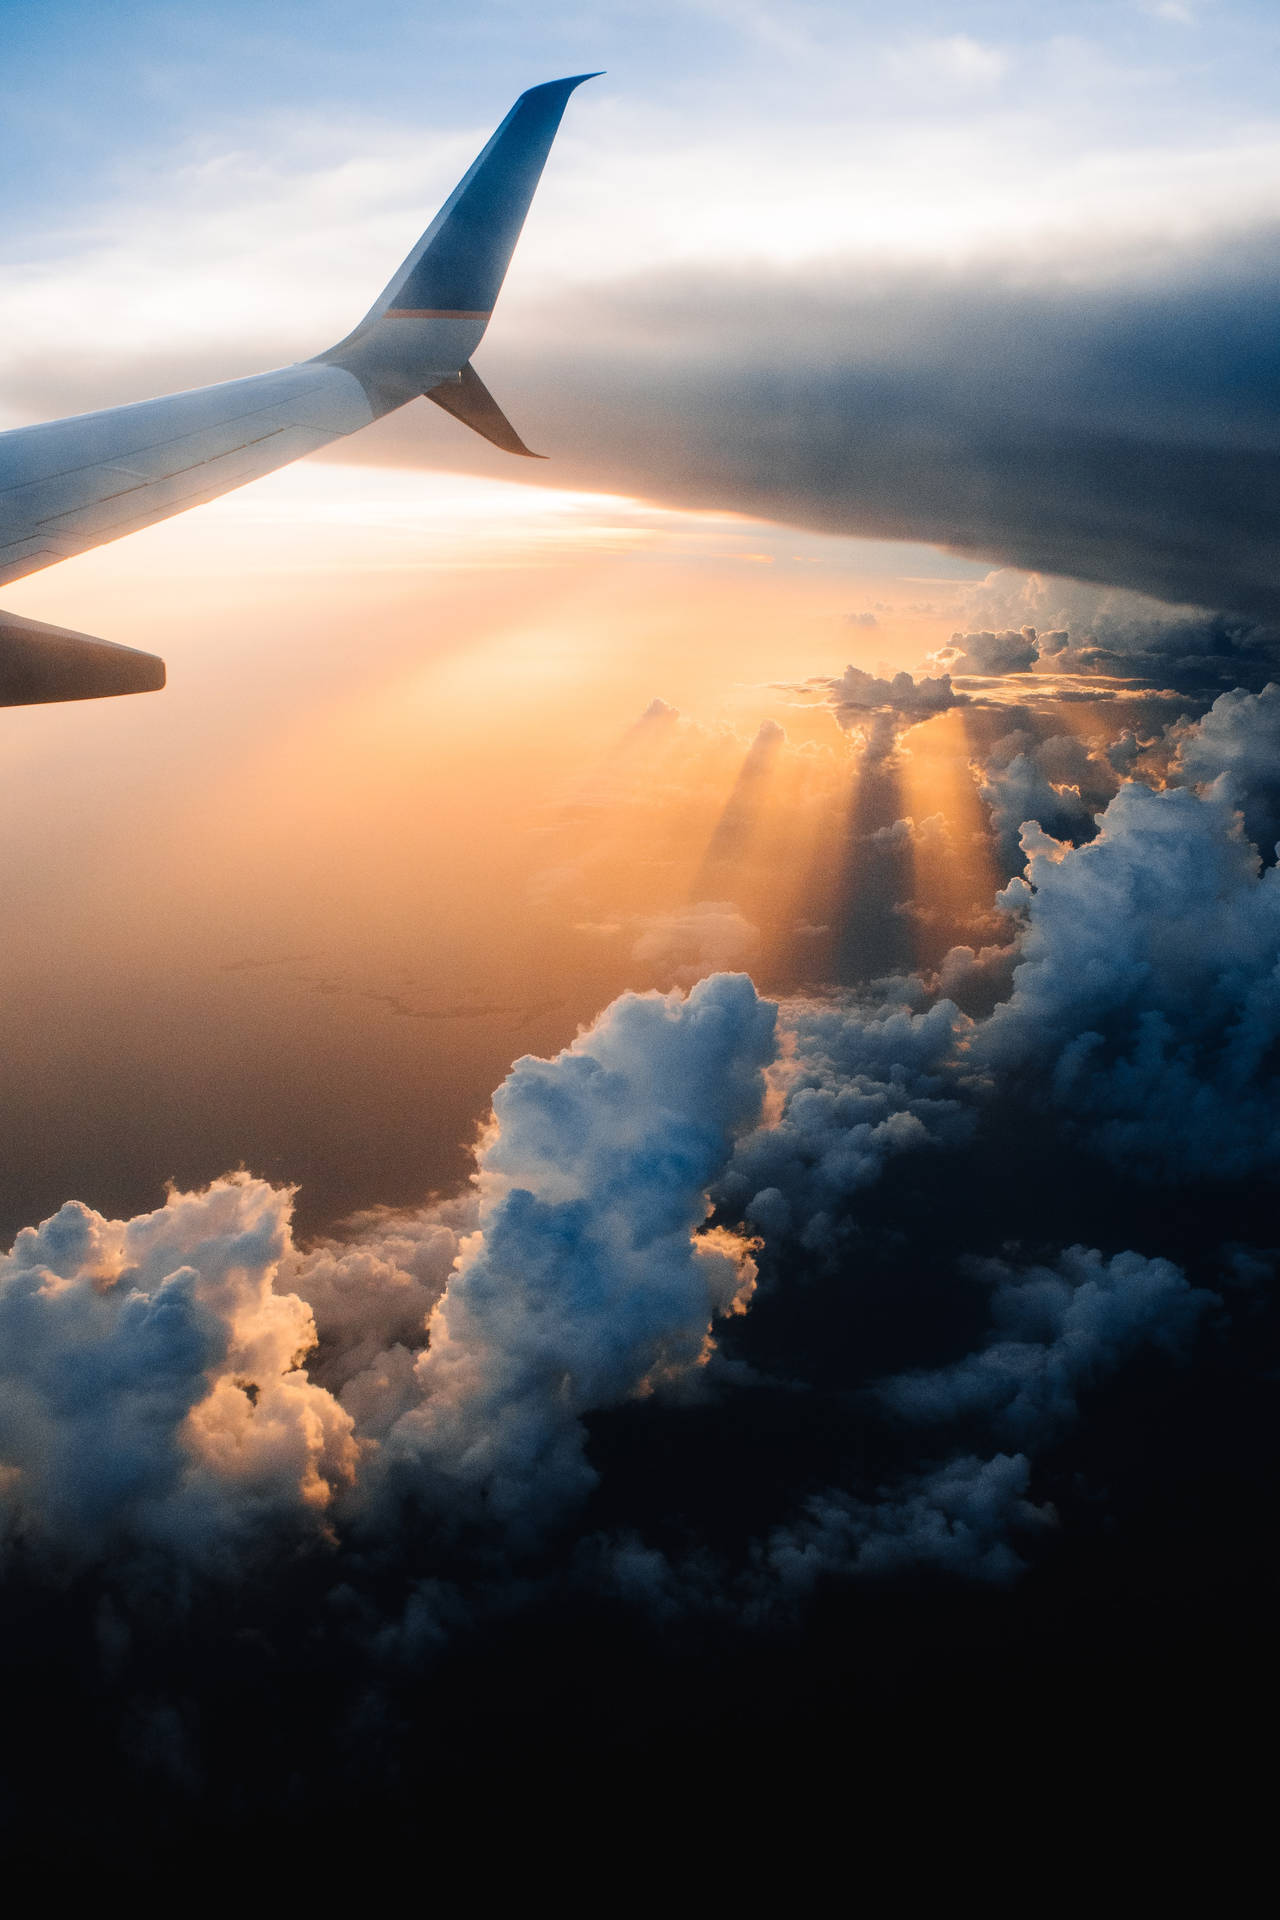 Aeroplanodell'aviazione Con Ali E Nuvole Panoramiche Sfondo